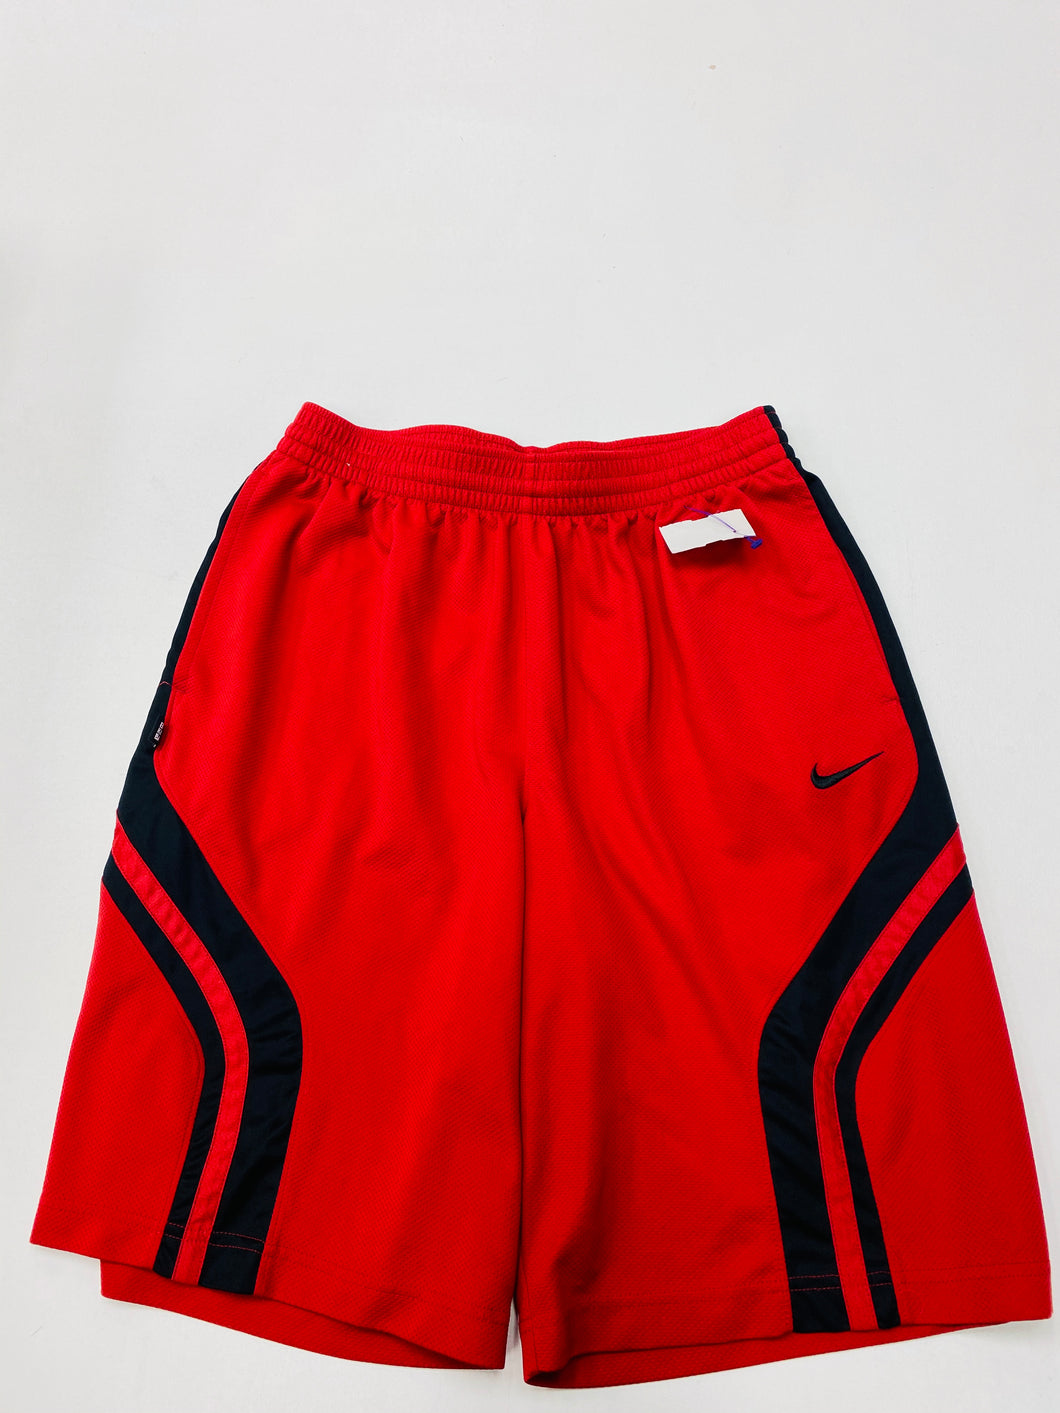 Nike Mens Shorts Size Large